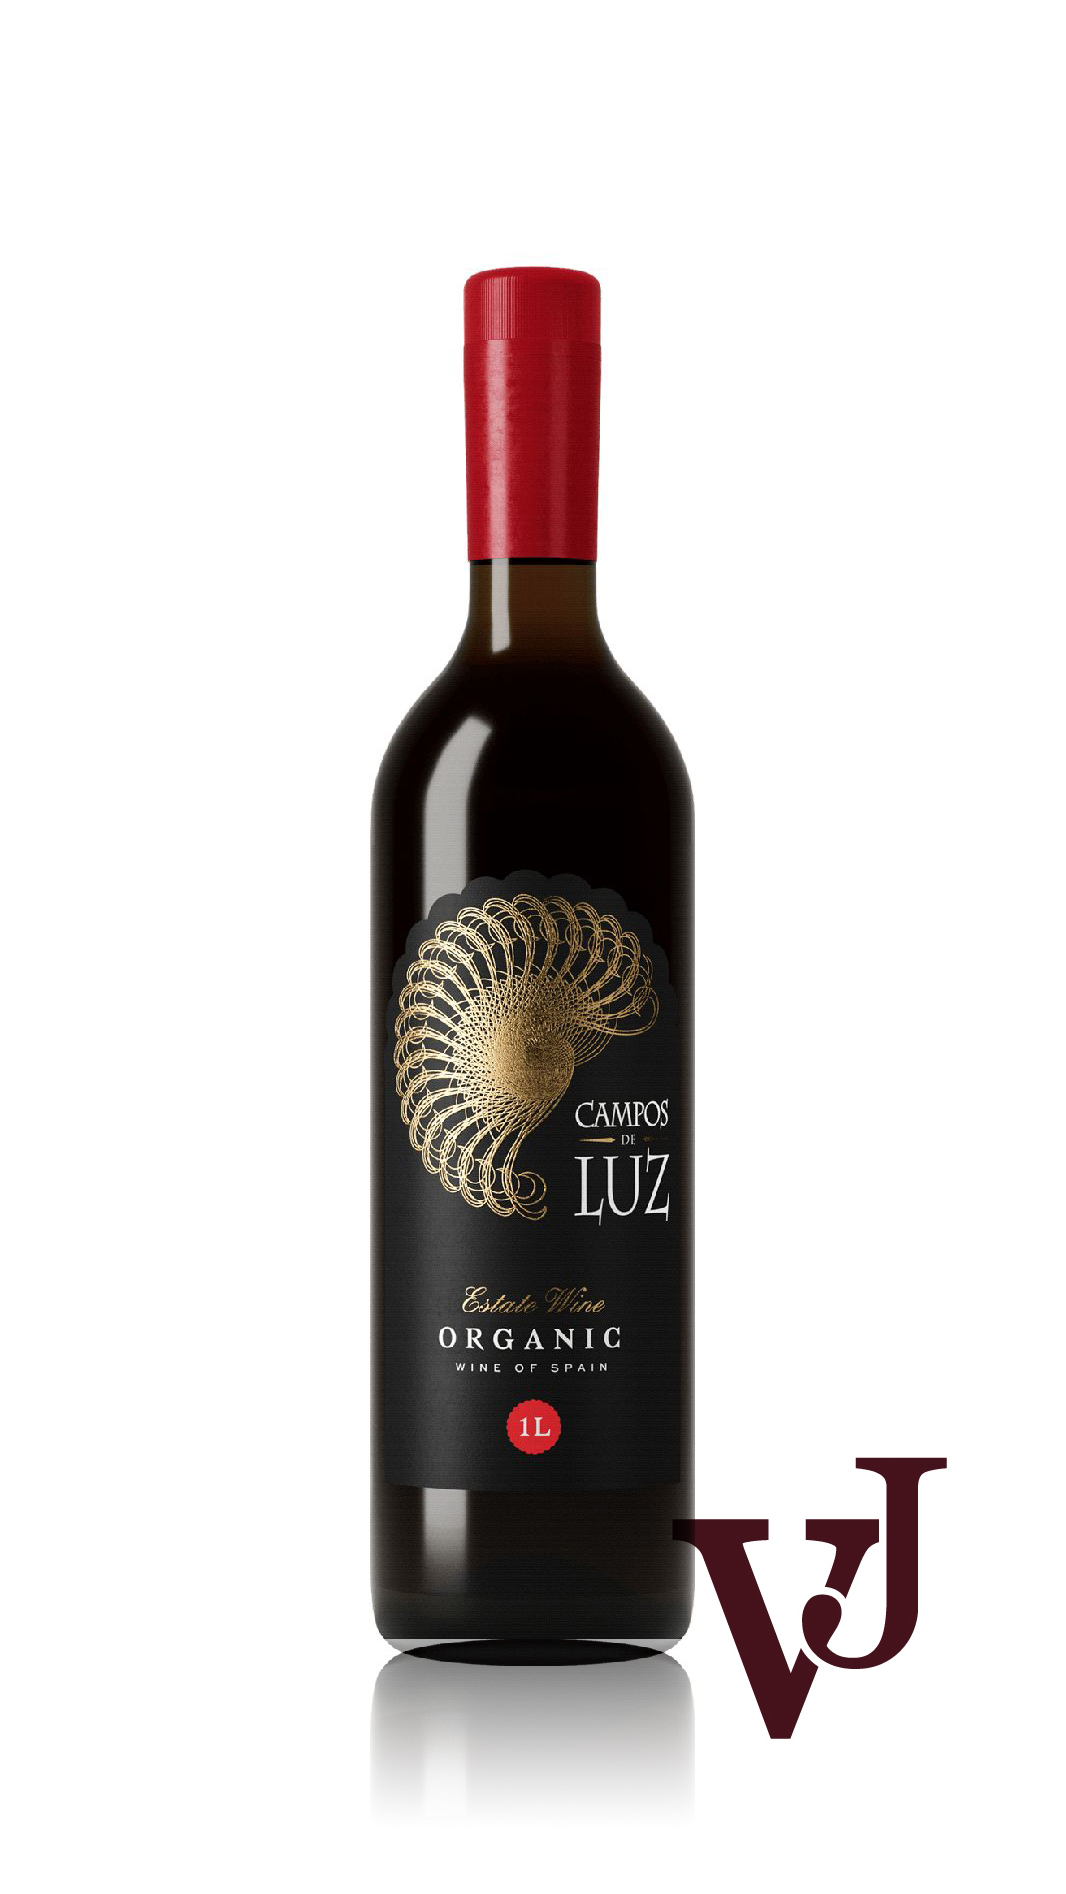 Rött Vin - Campos de Luz Organic artikel nummer 5316601 från producenten Vinergia från området Spanien